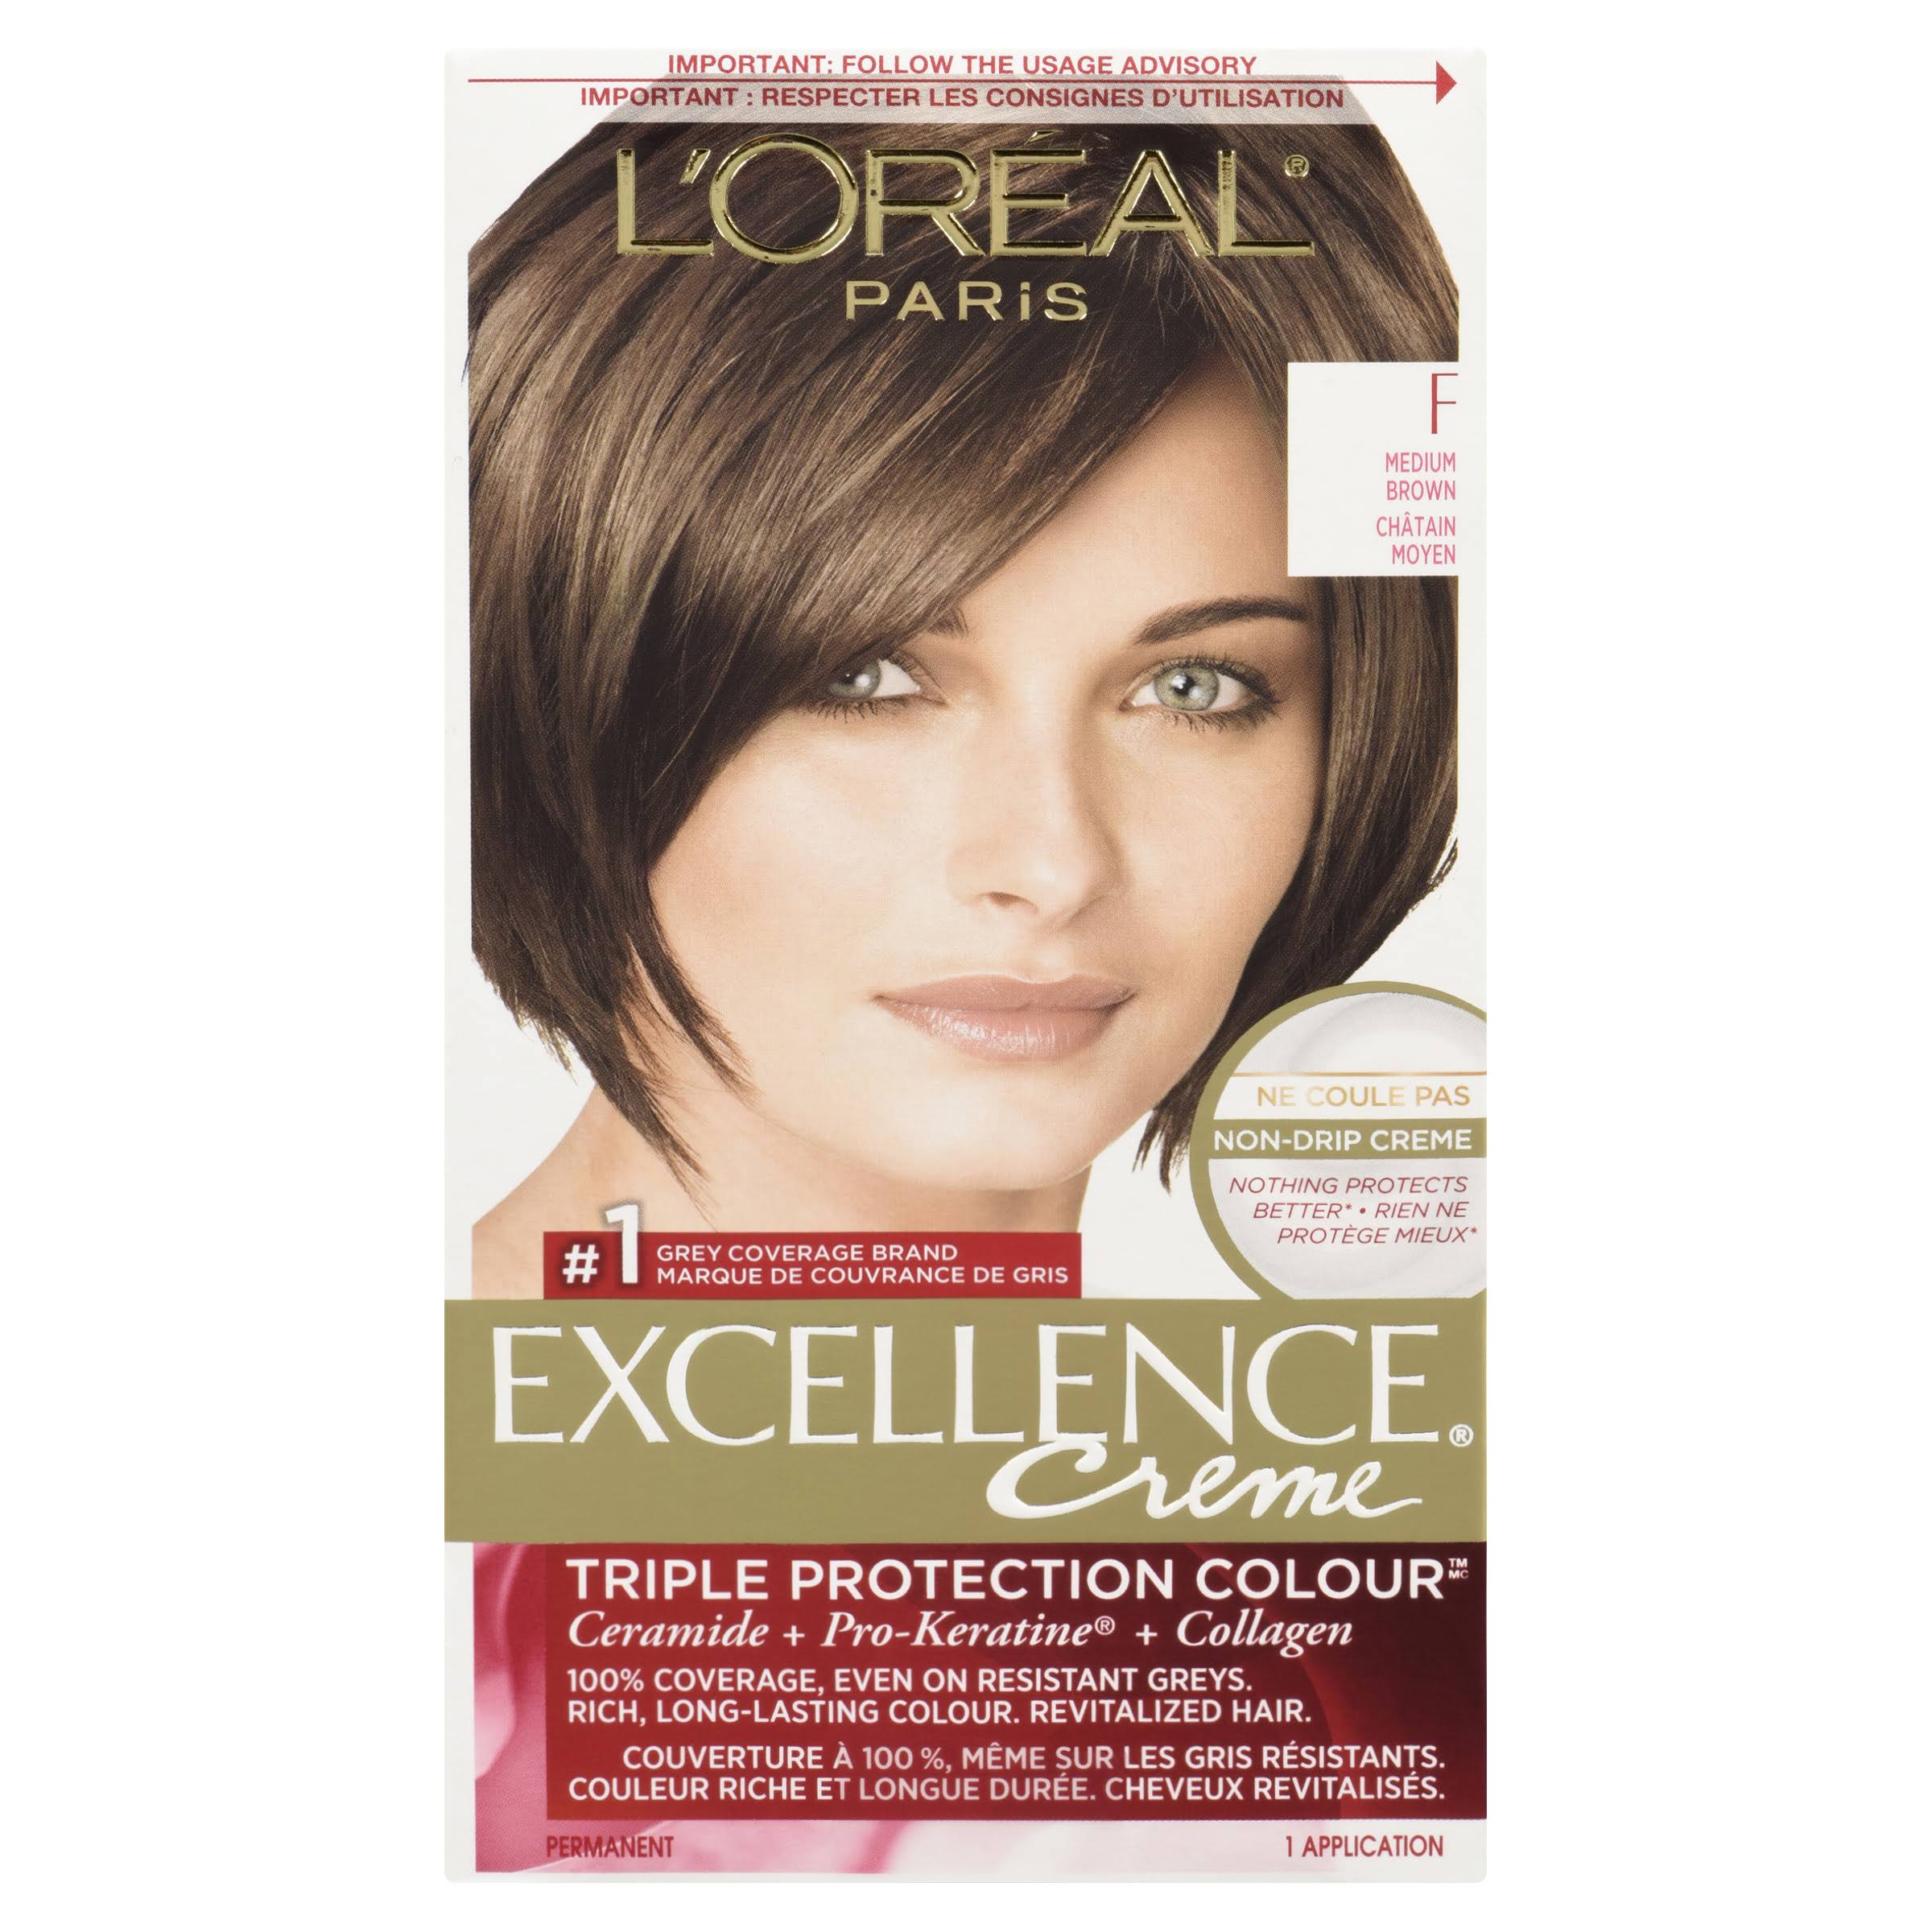 L'oréal Paris Excellence Crème Permanent Hair Colour - F Medium Brown